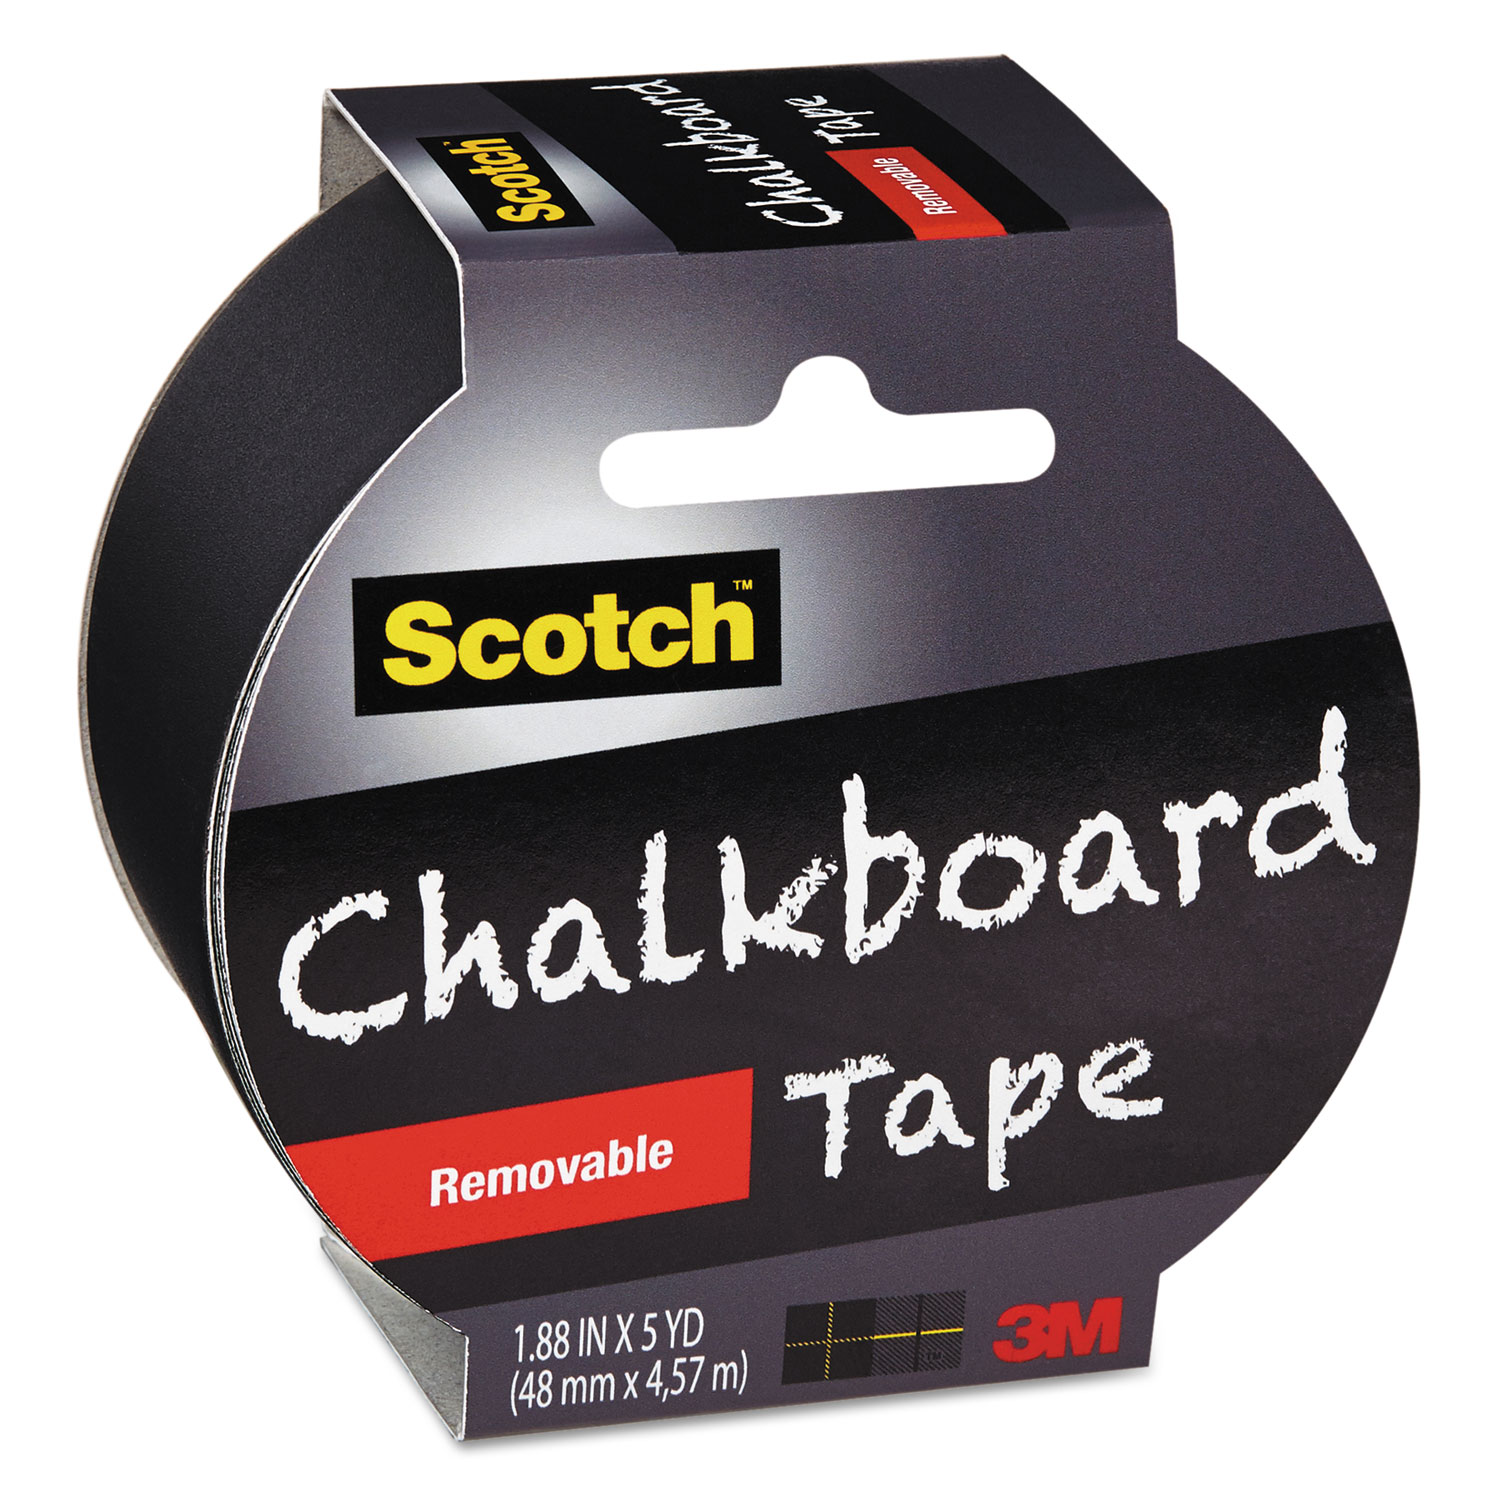 Chalkboard Tape, 1.88